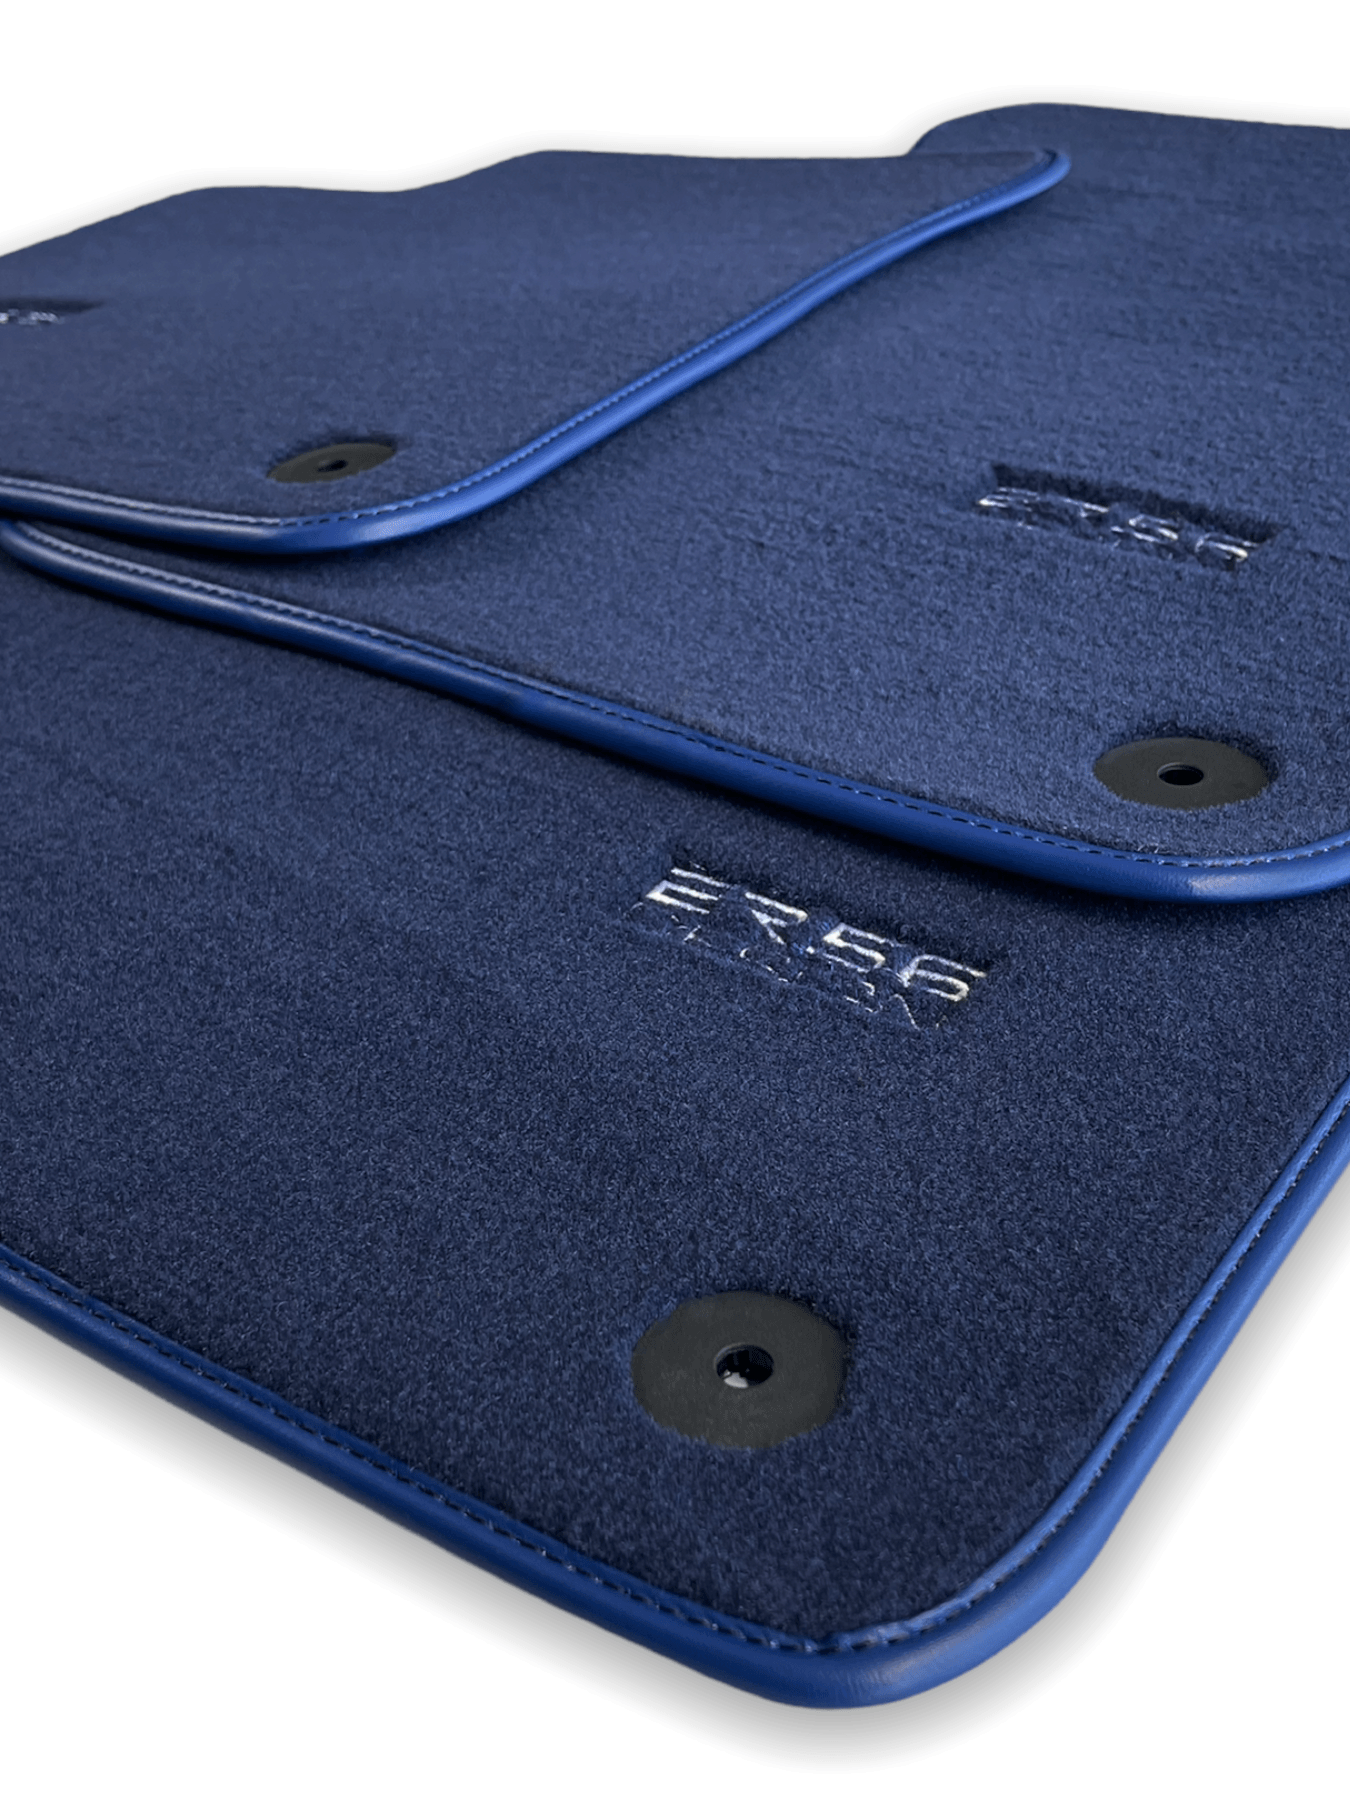 Dark Blue Floor Mats for Audi Q5 FYT Sportback Hybrid (2021-2024) | ER56 Design